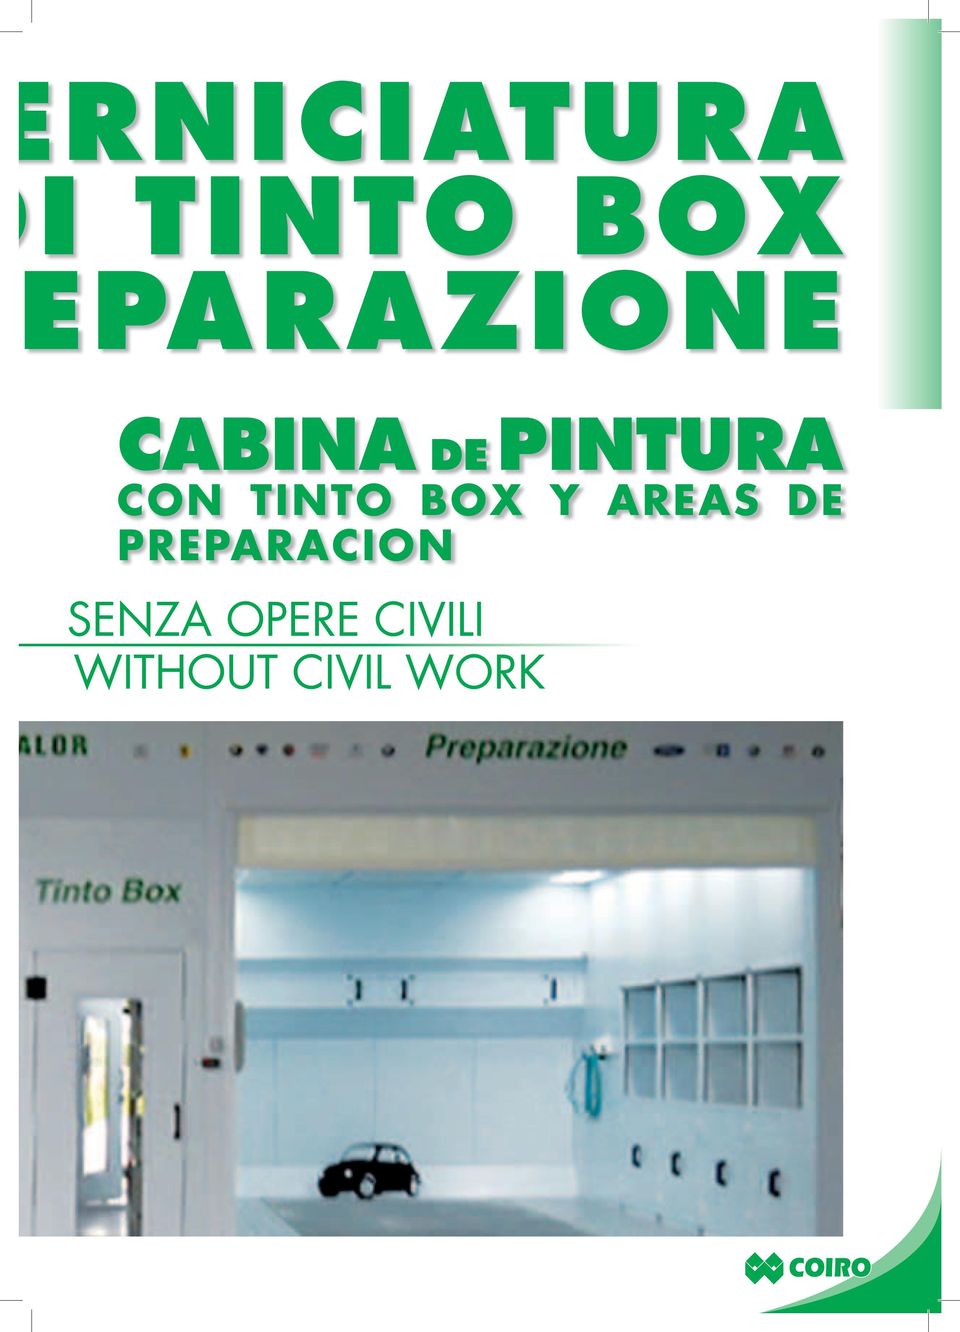 CON TINTO BOX Y AREAS DE